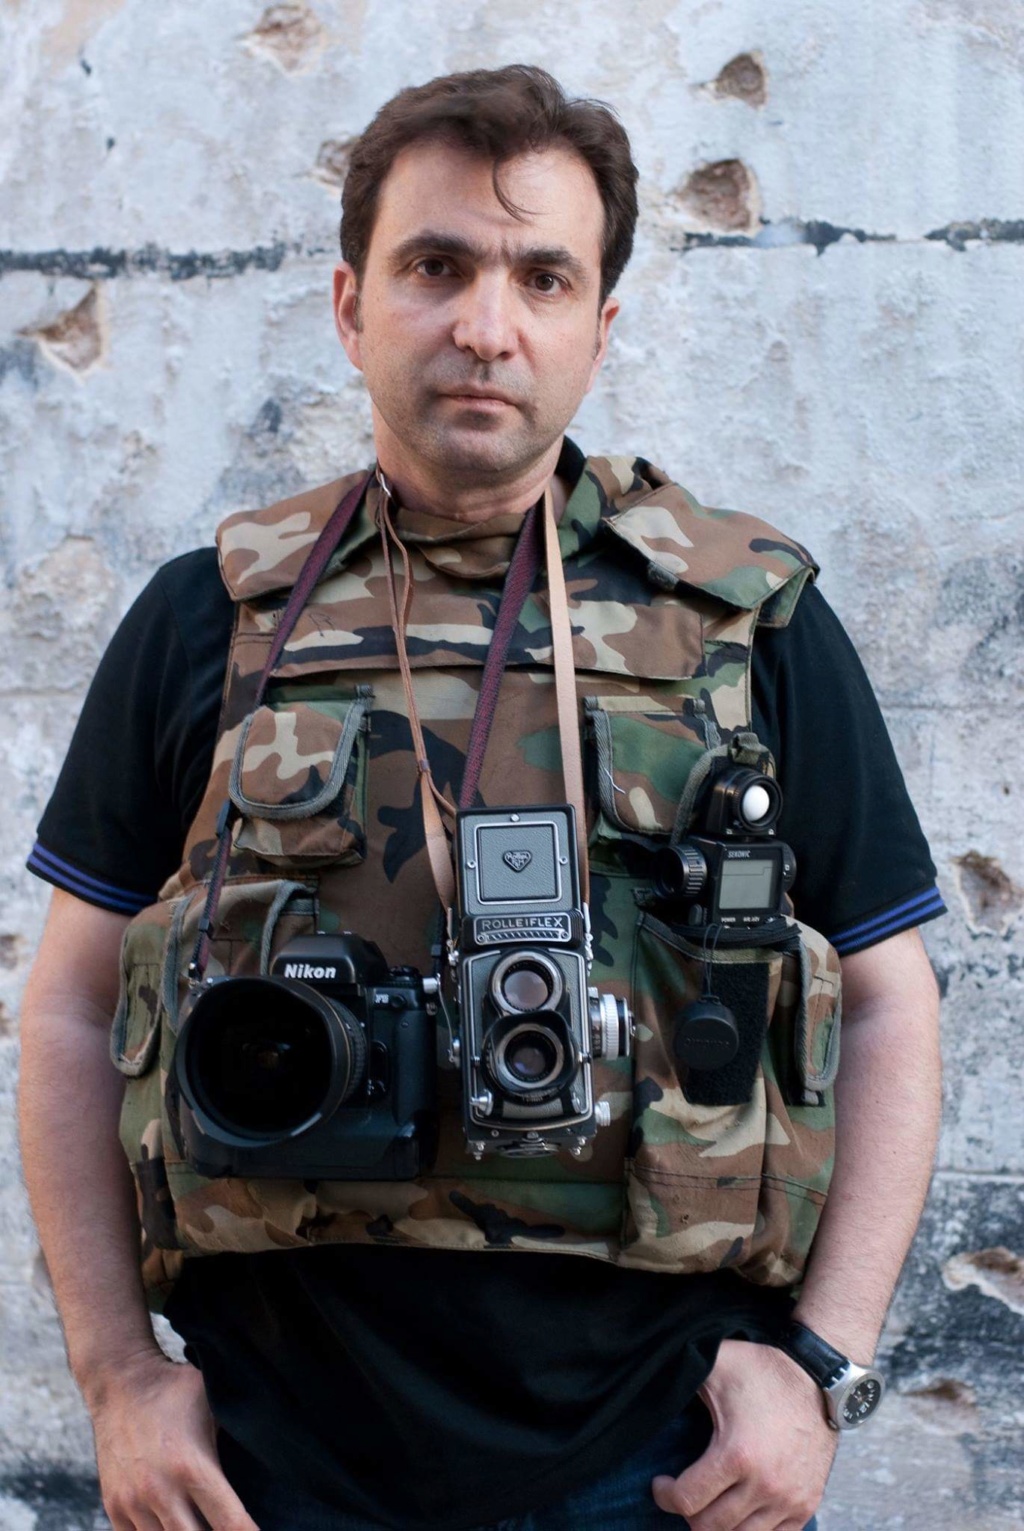 المصور السوري هاكوب فانبسيان و جائزة الصور الضوئية بباريس Fb_img30